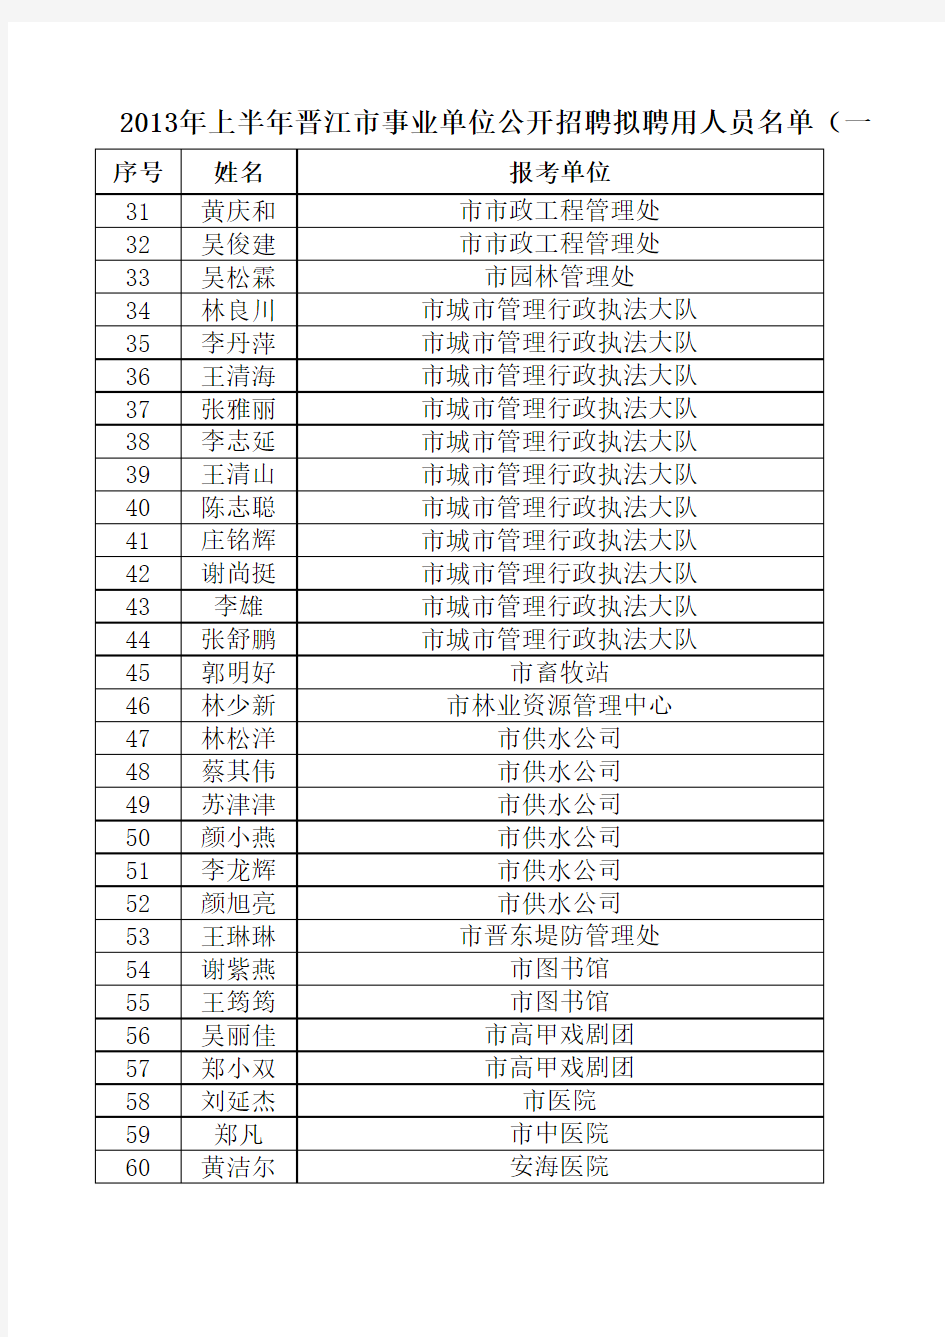 2013年上半年晋江市事业单位公开招聘拟聘用人员名单(一)